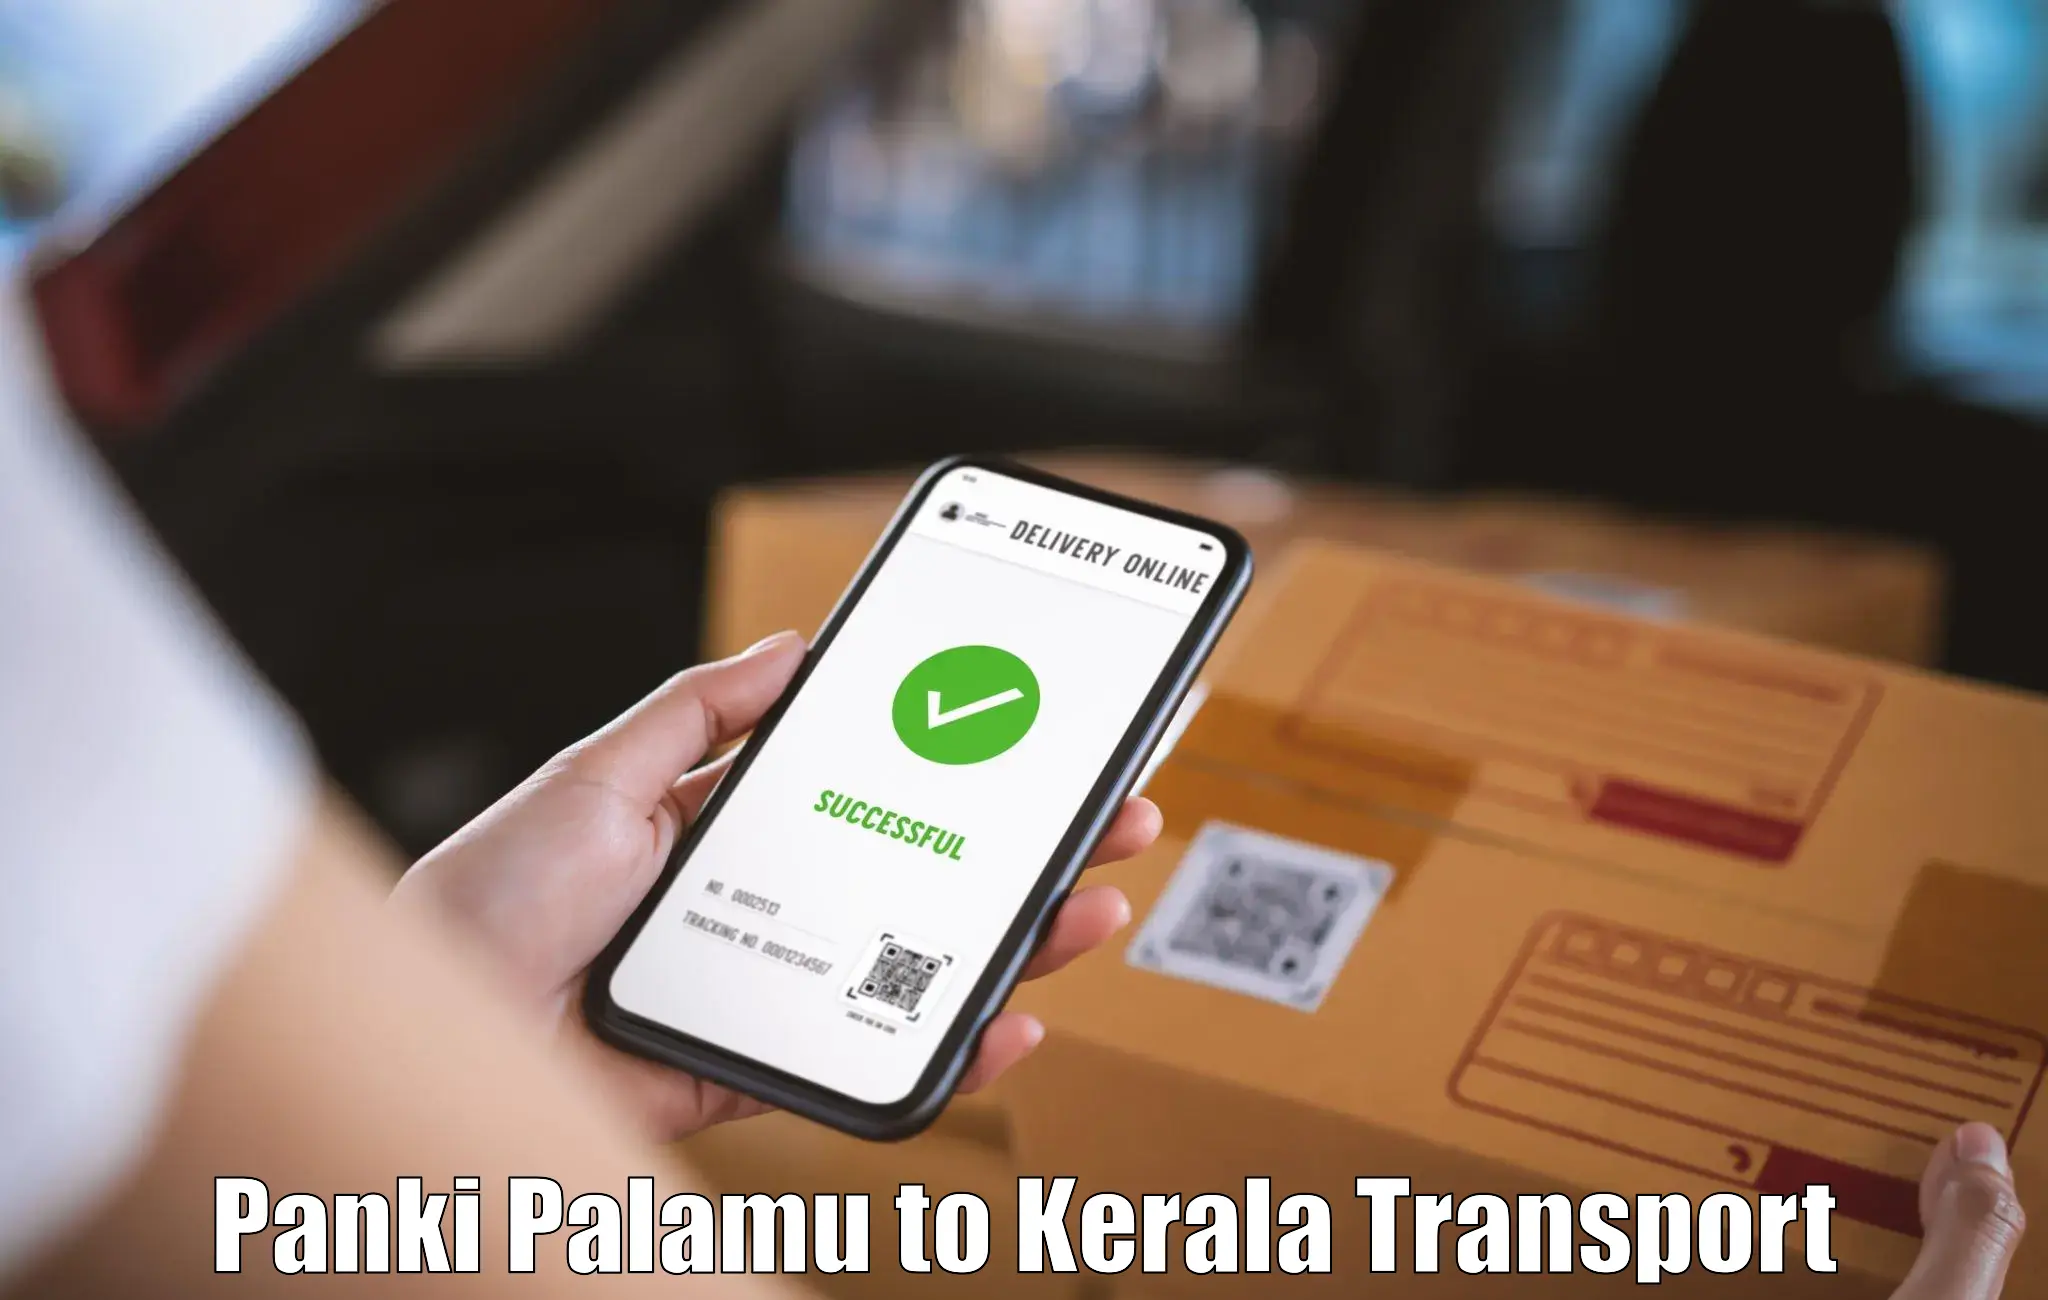 Shipping services Panki Palamu to IIIT Kottayam